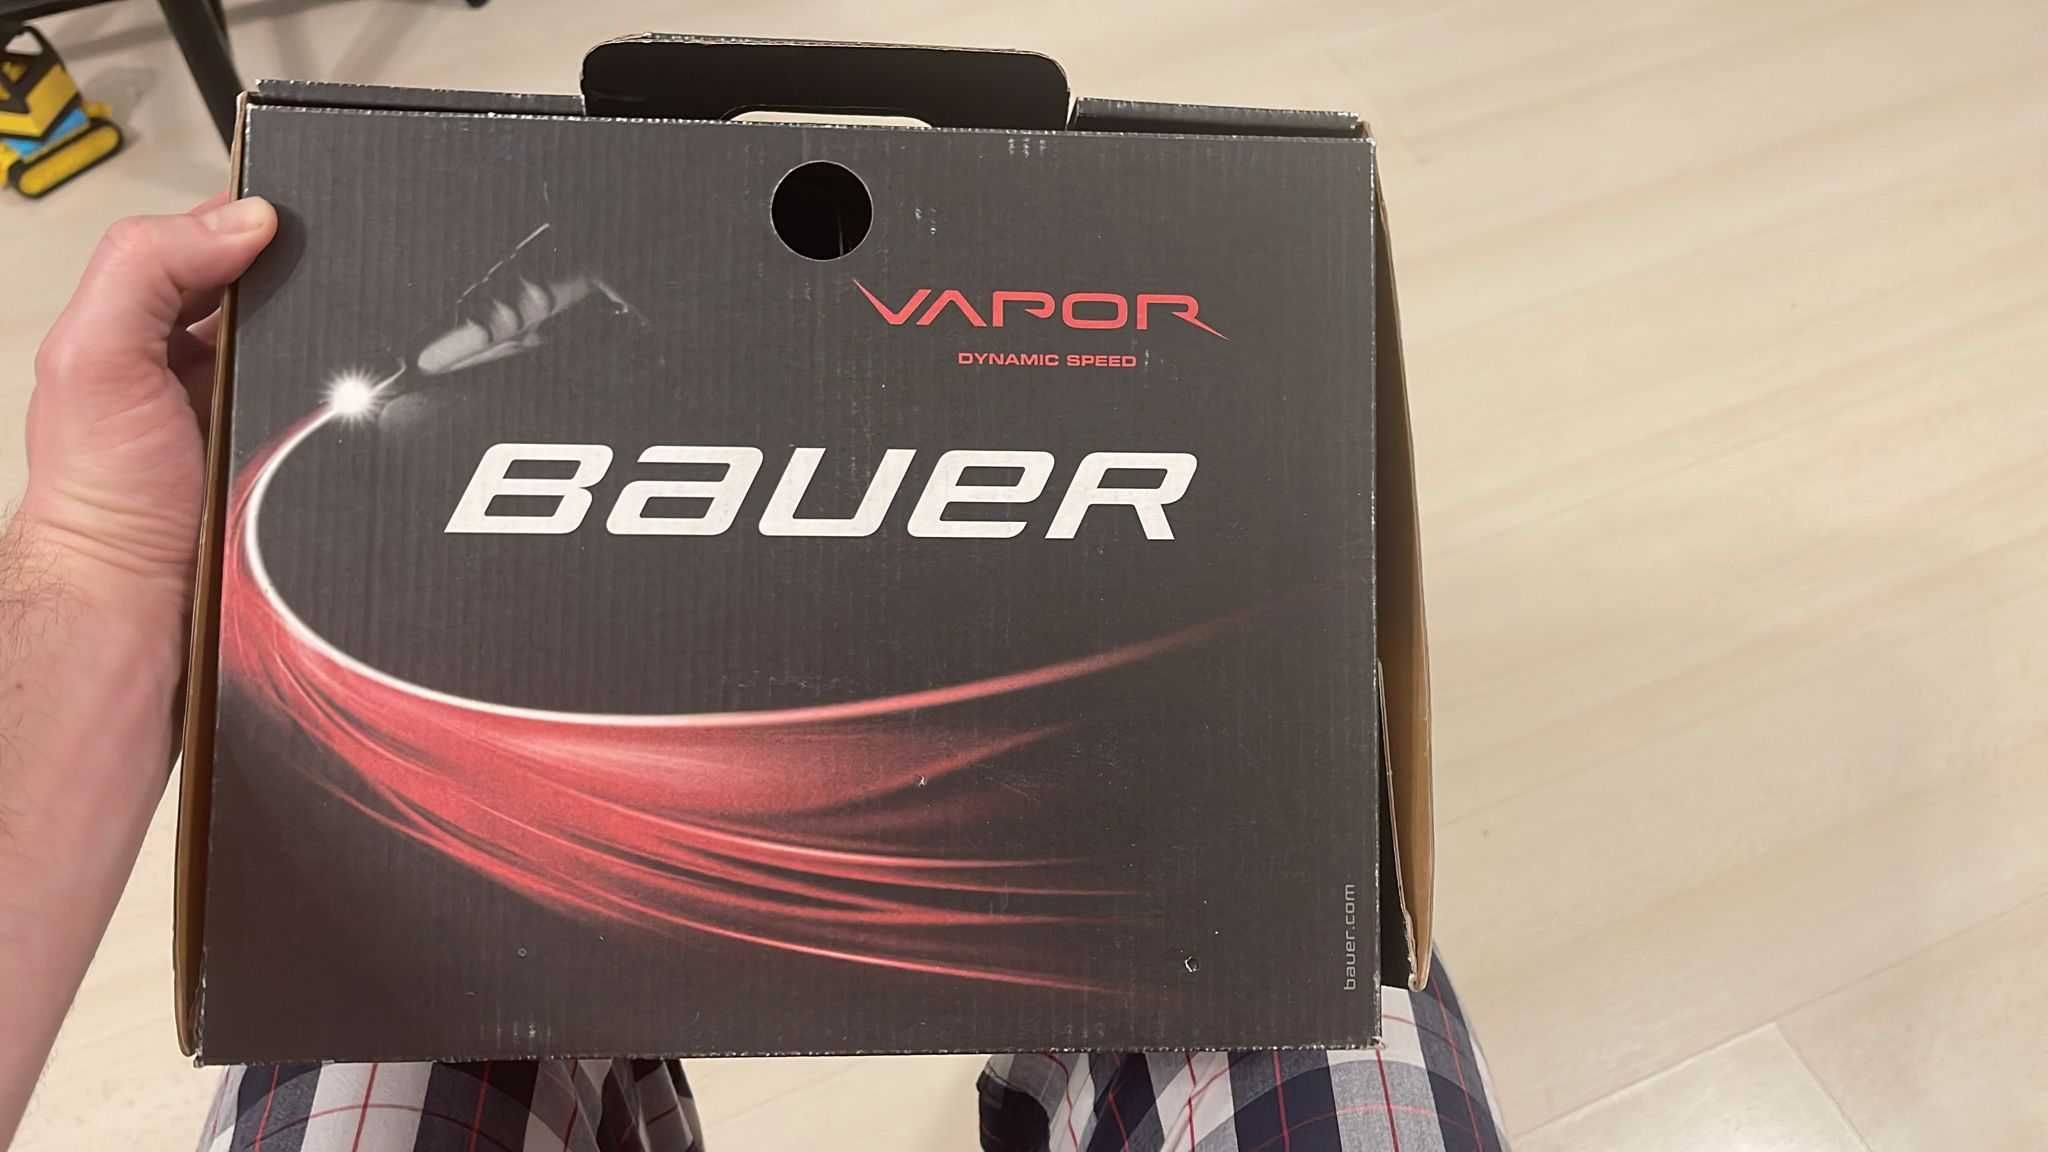 Bauer Vapor dynamic speed